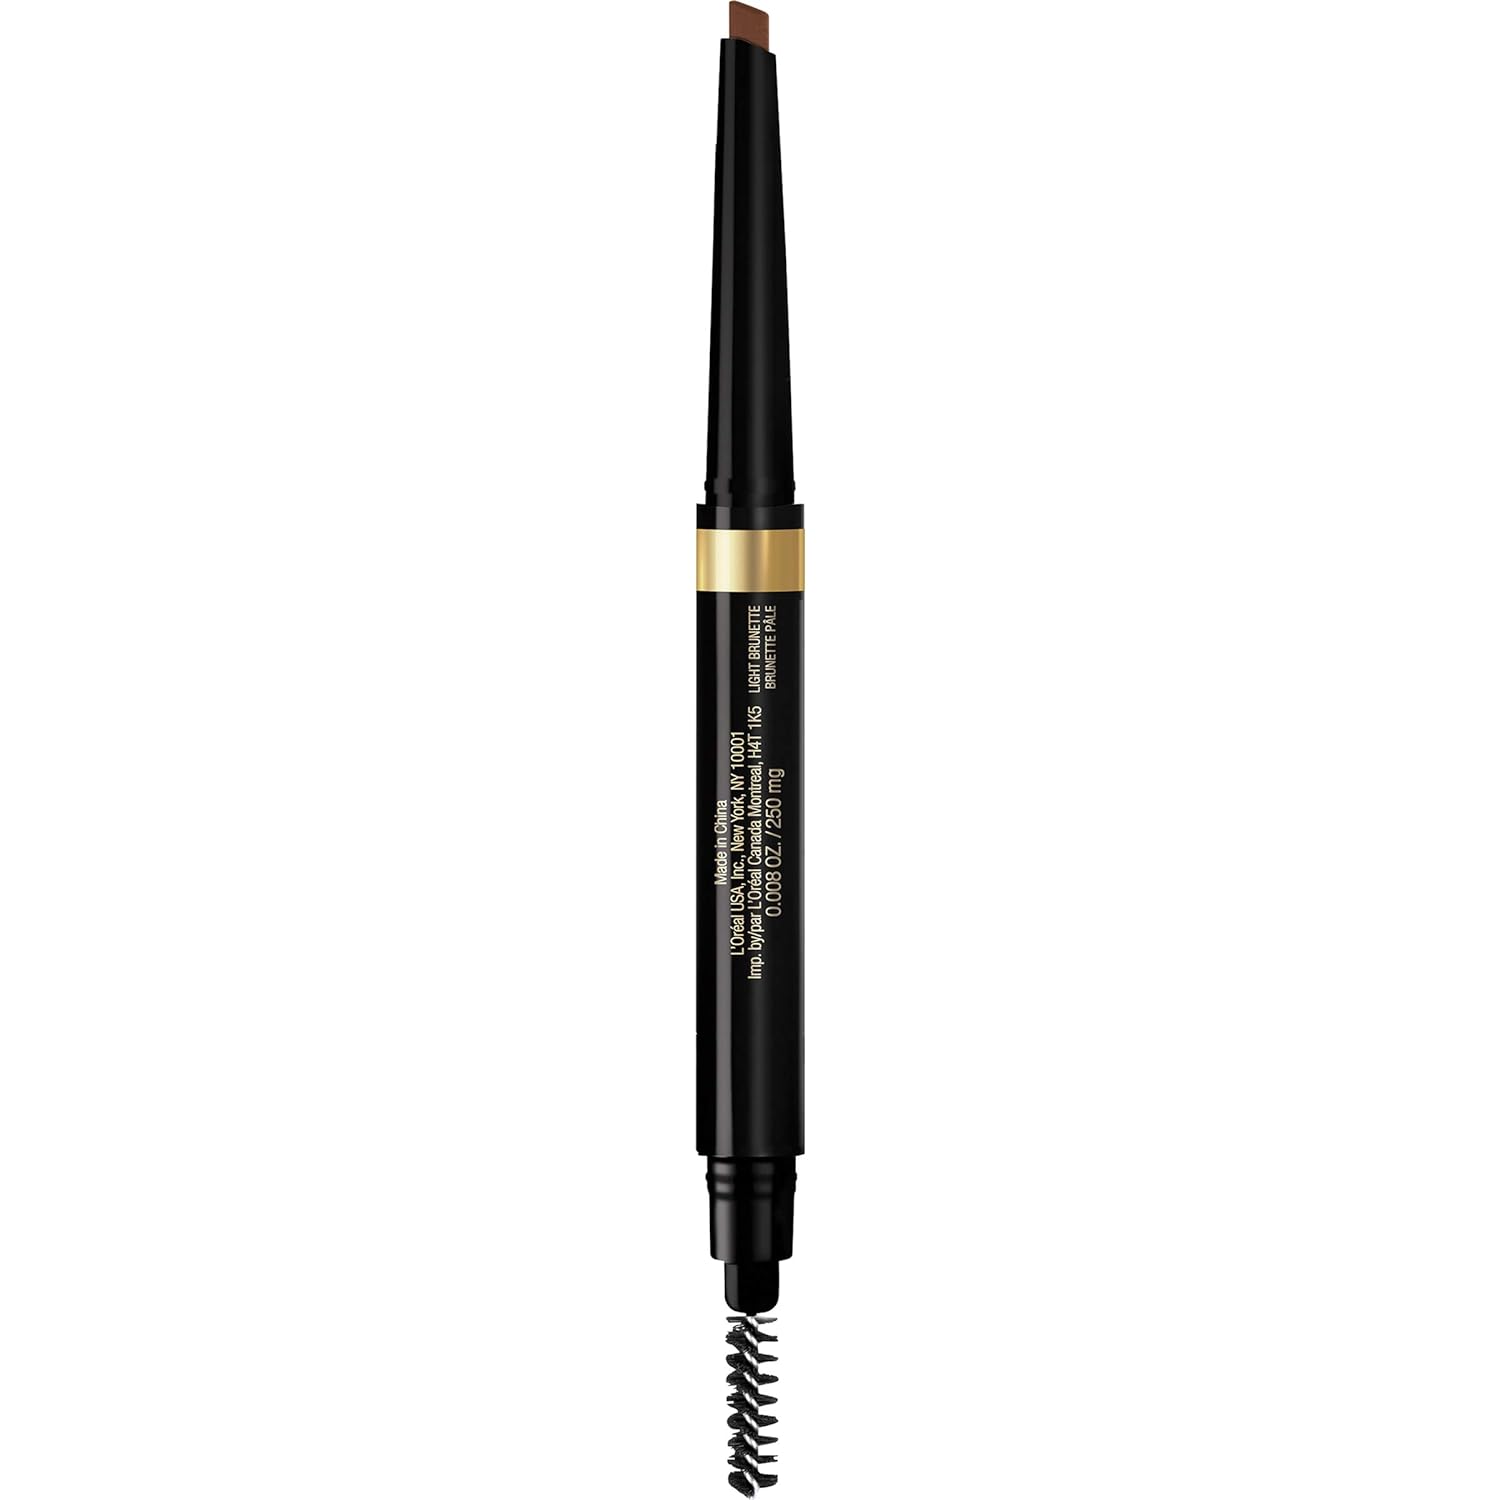 L’Oréal Paris Makeup Brow Stylist Shape and Fill Mechanical Eye Brow Makeup Pencil, Light Brunette, 0.008